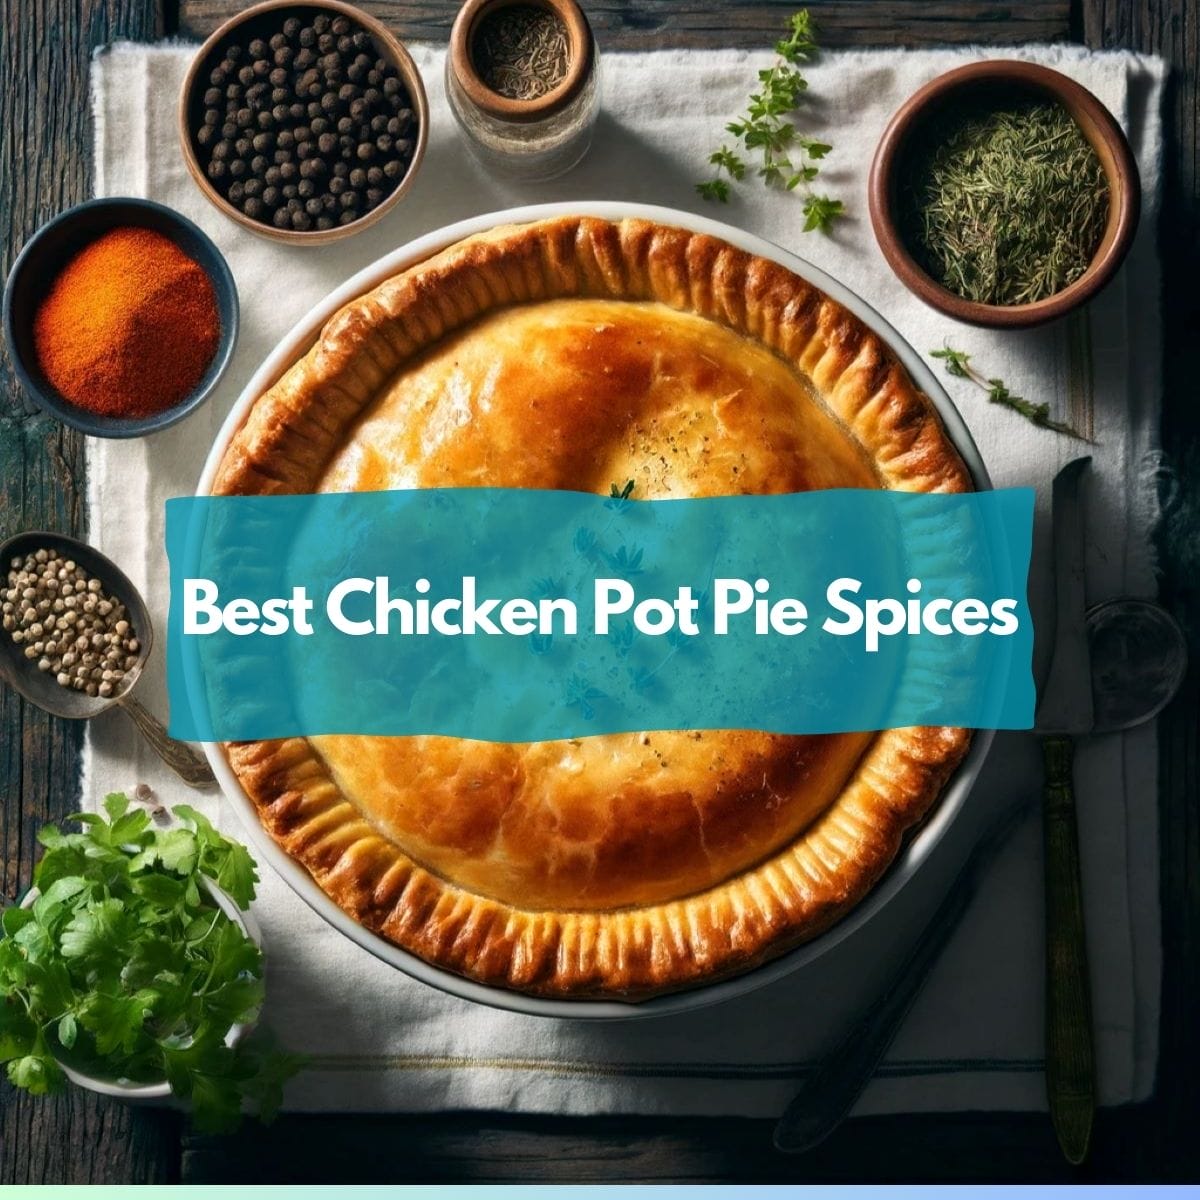 Best chicken pot pie spices